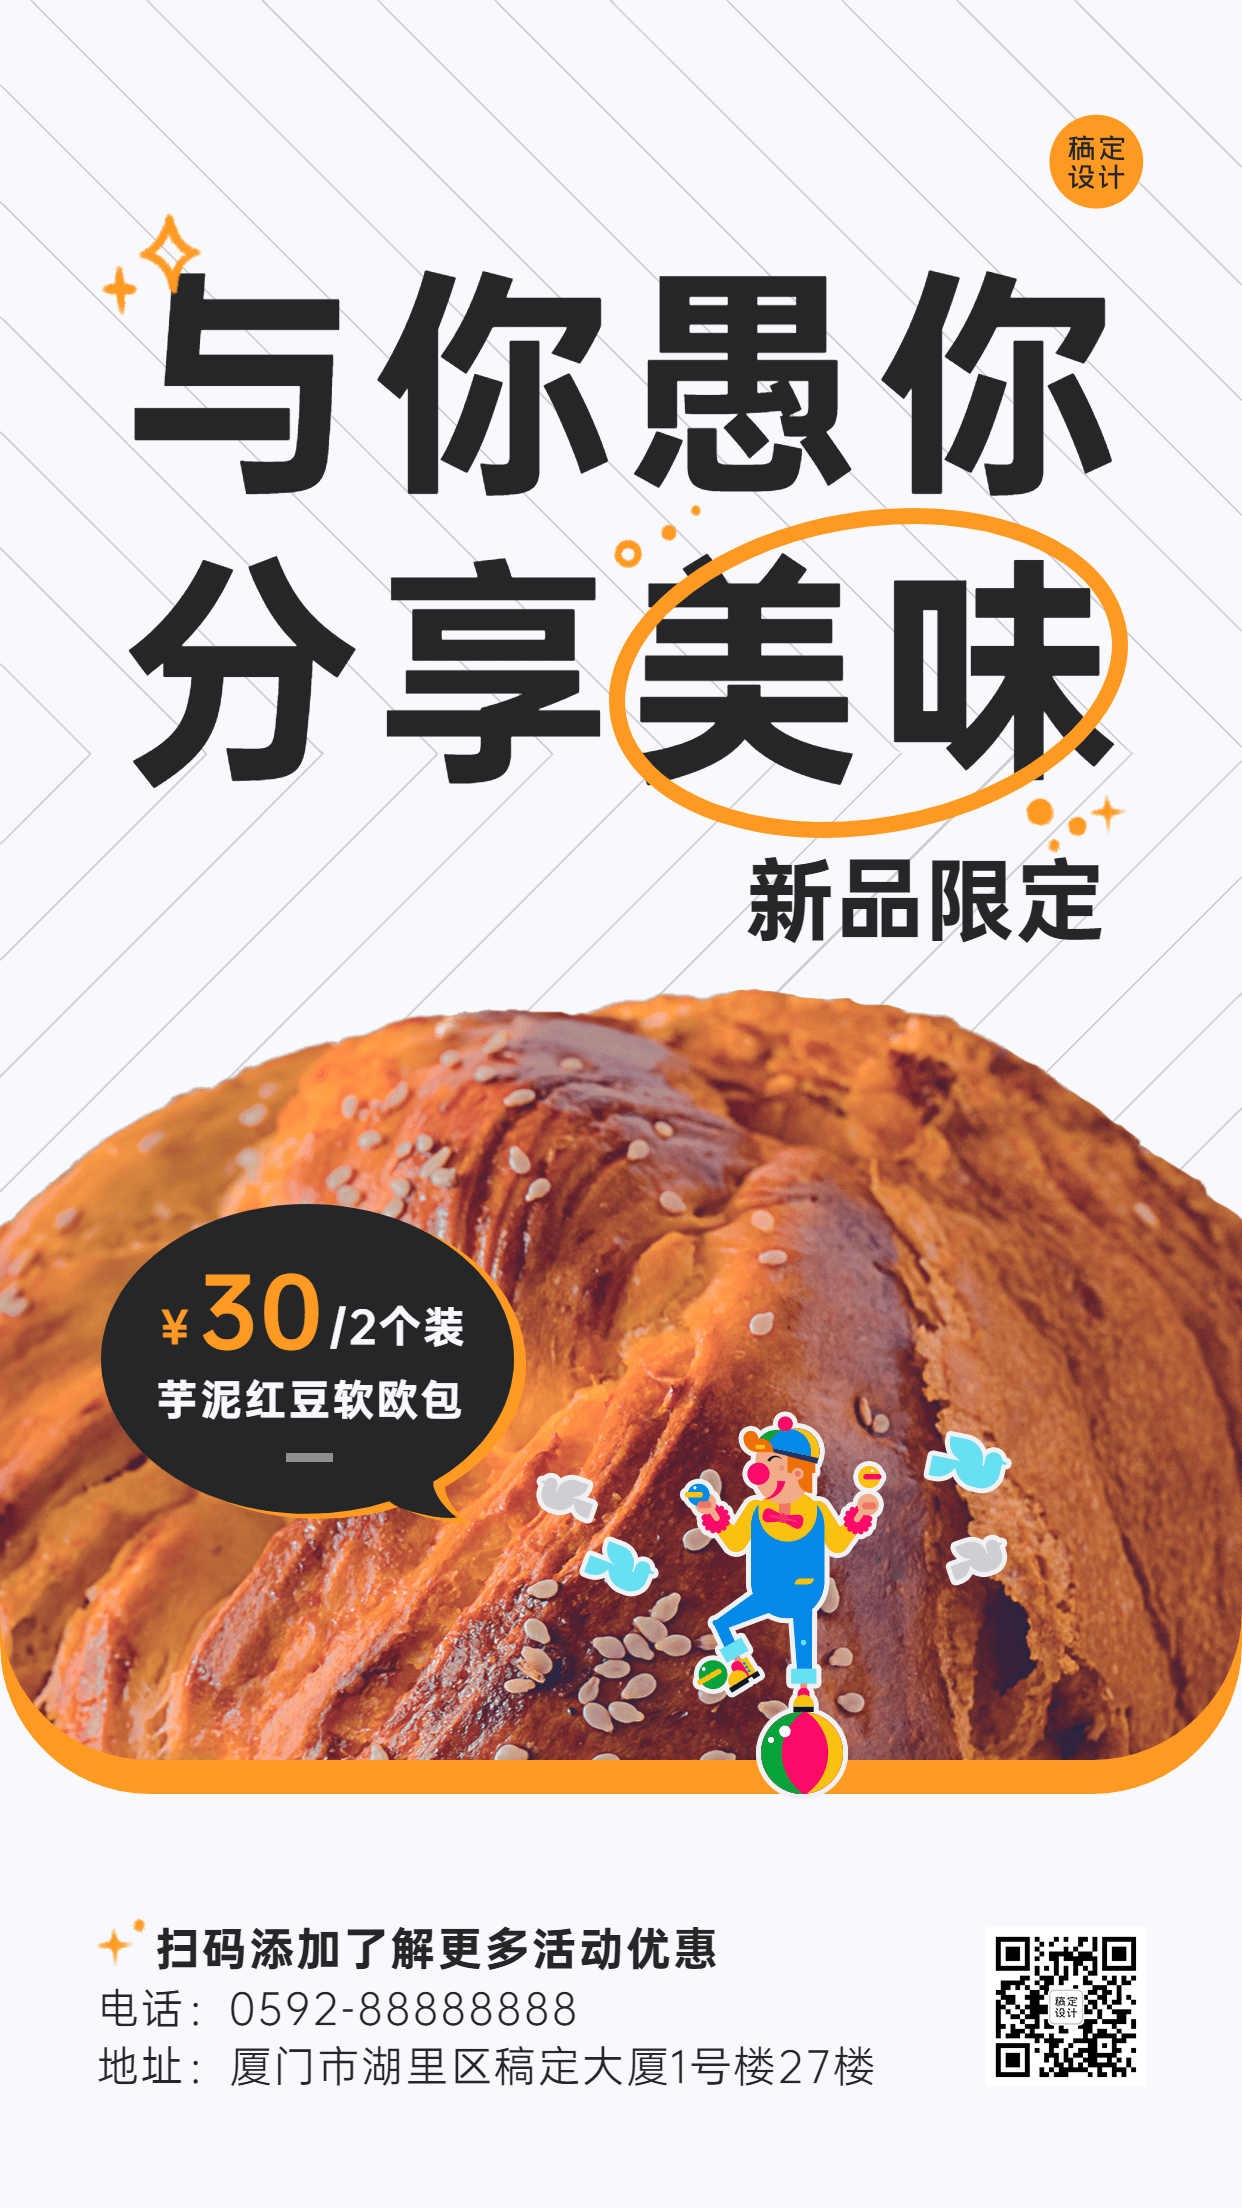 愚人节面包烘焙产品营销餐饮手机海报预览效果